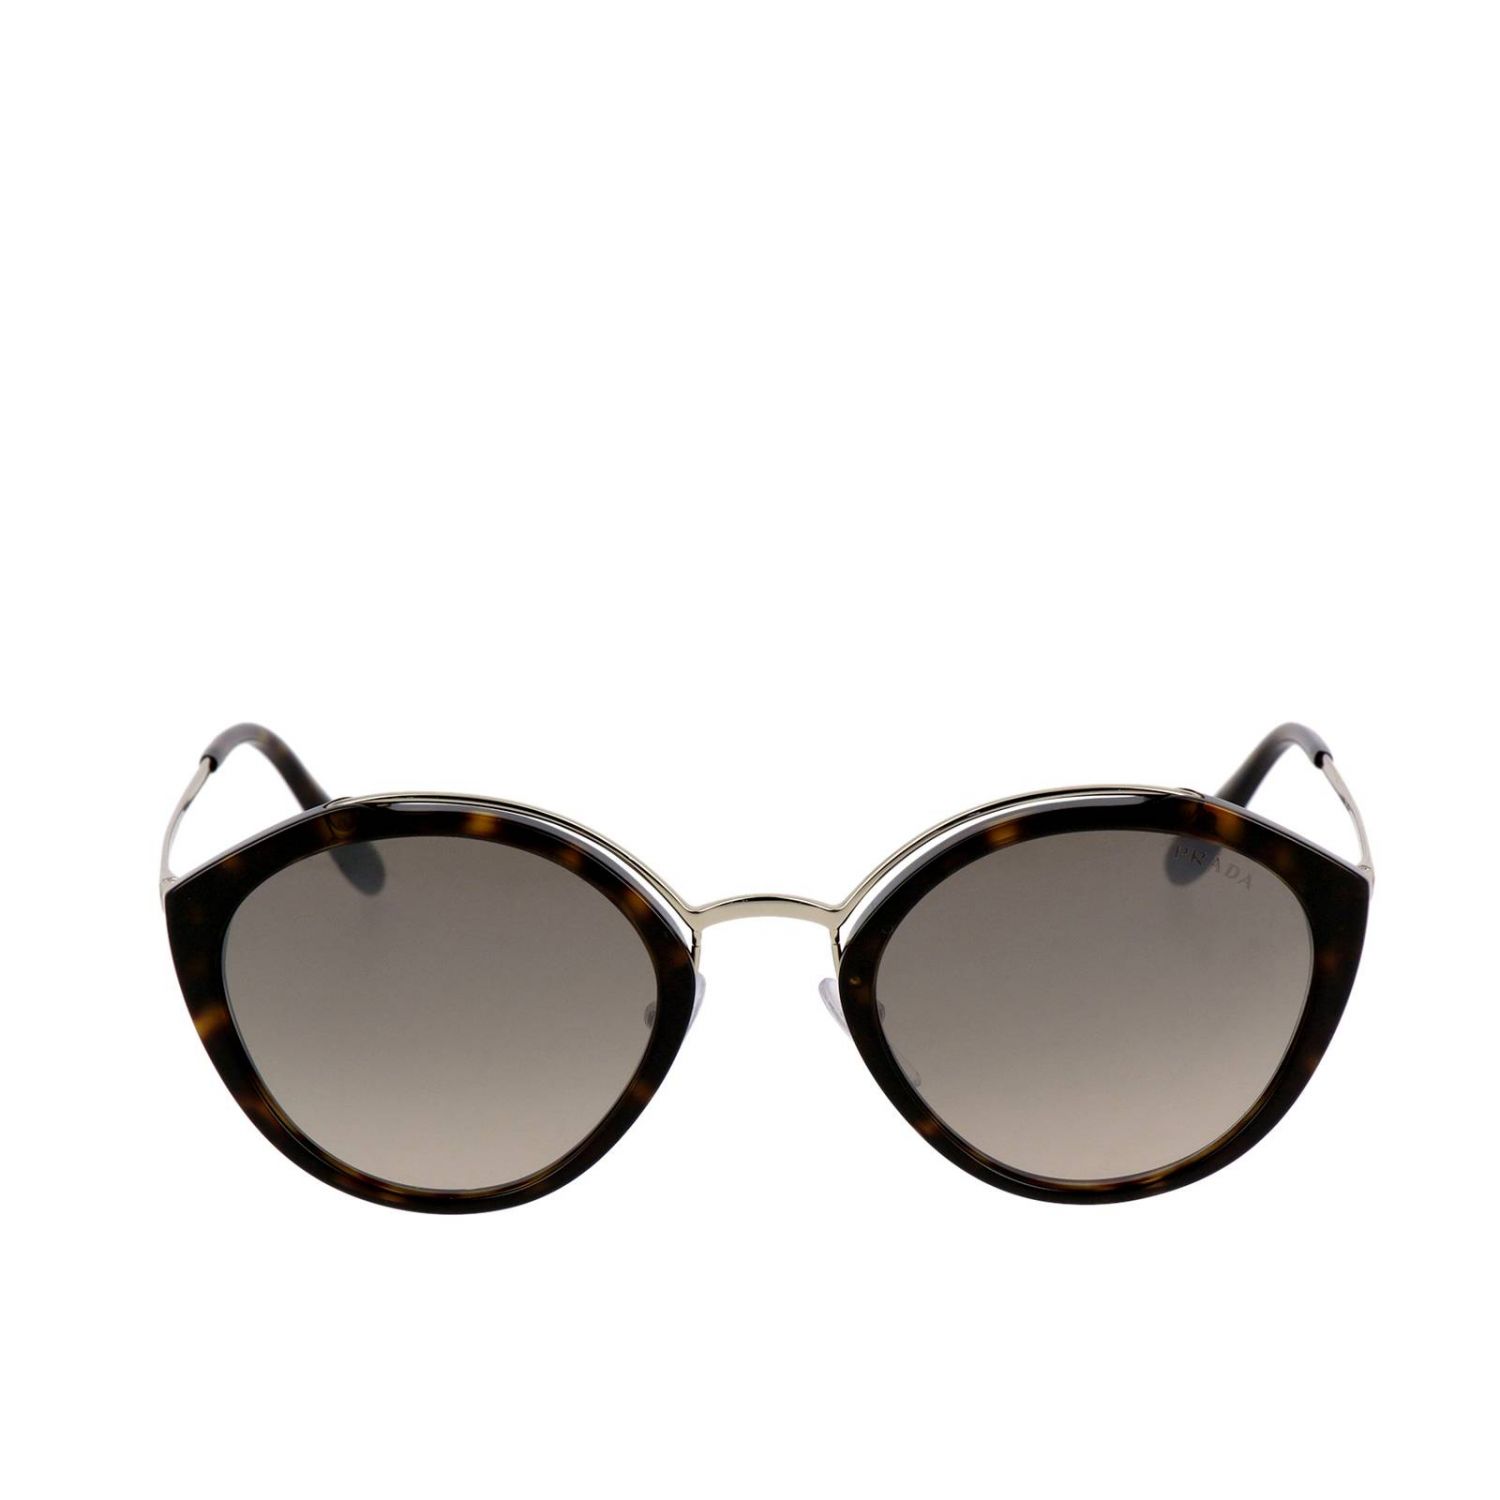 Sunglasses Prada: Prada SPR 18U sunglasses in acetate and metal brown 2